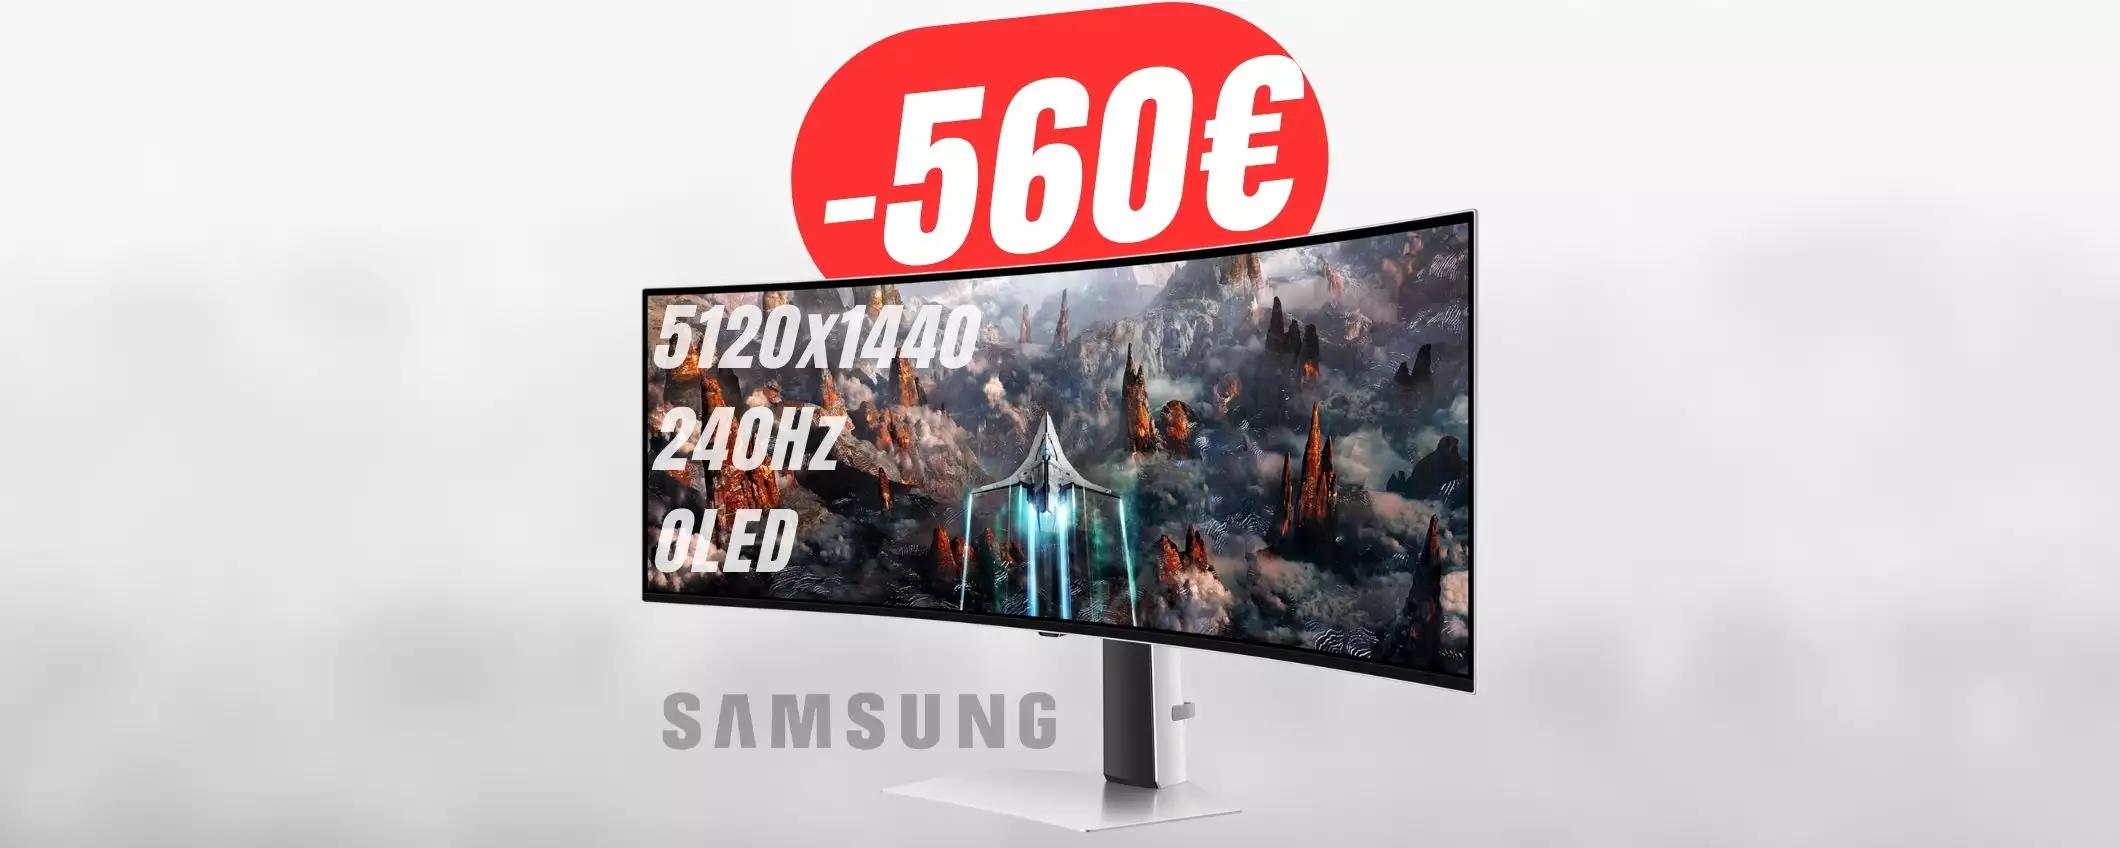 Risparmia -560€ sul MONITOR ULTRA-WIDE di Samsung (OLED e 49